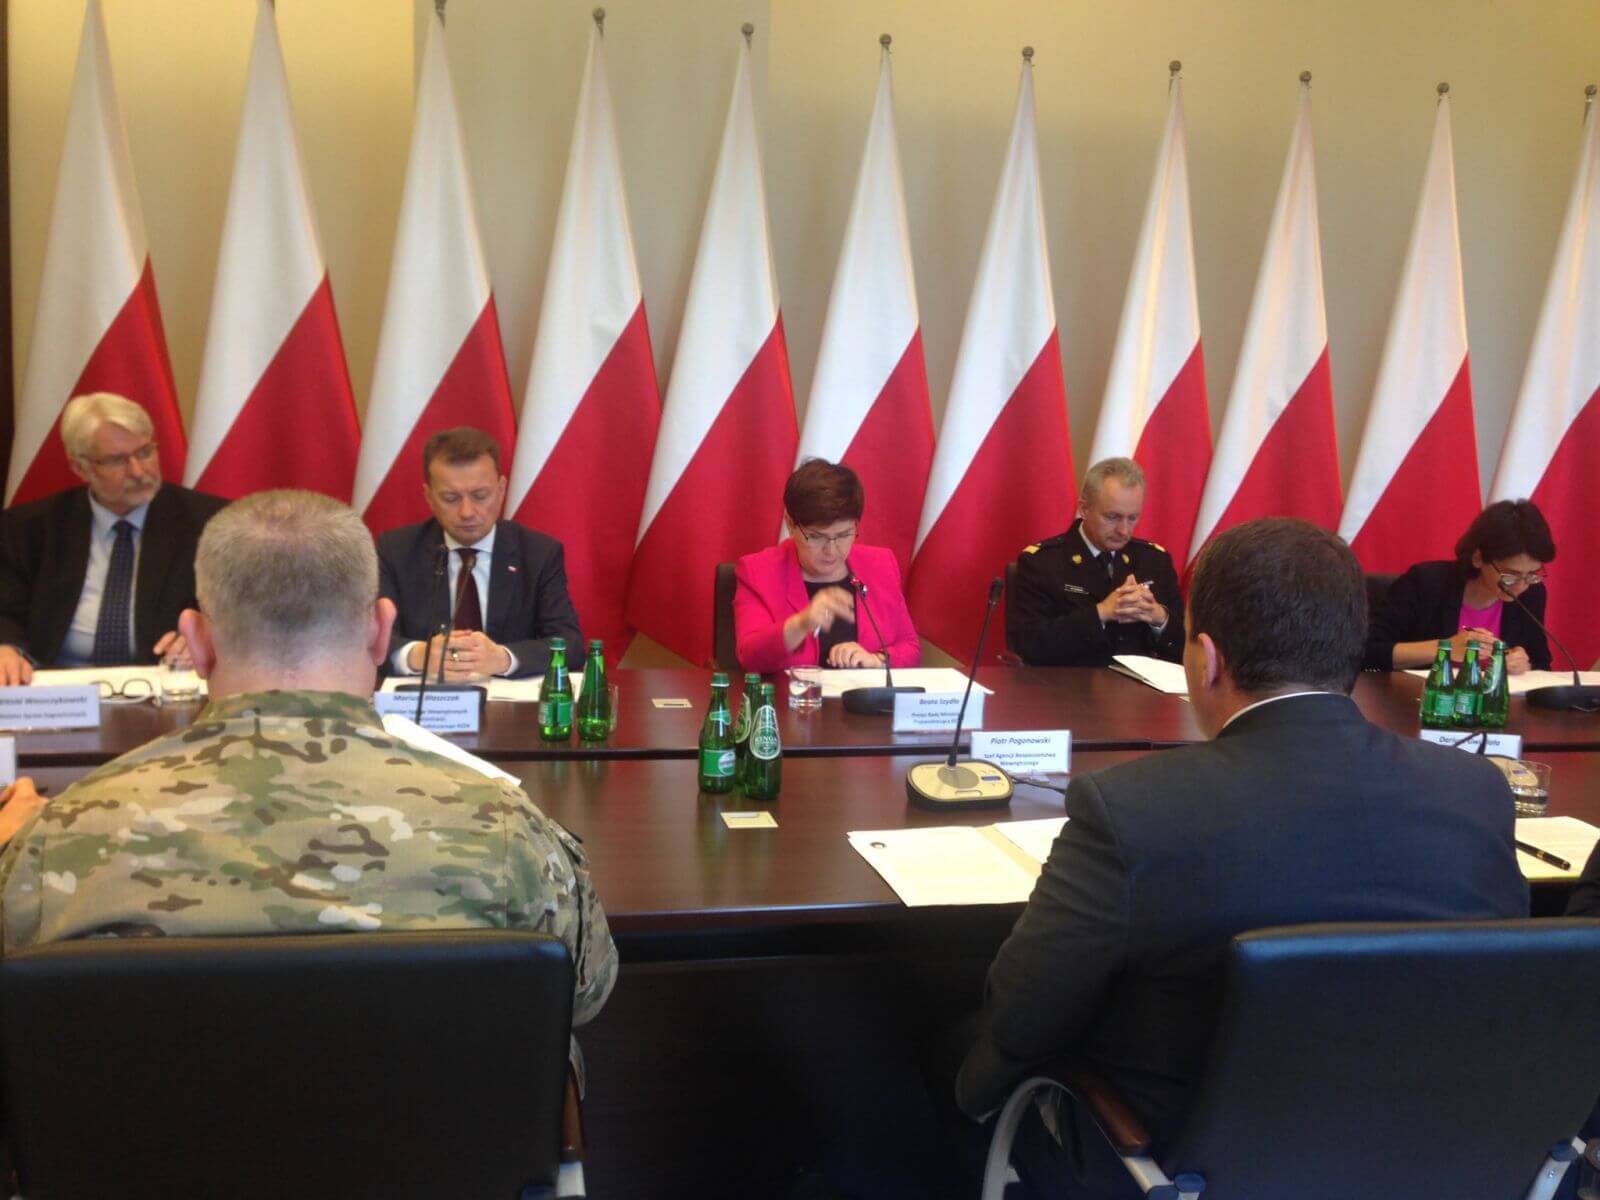 W 2017 roku premier Beata Szydło powołała Rządowy Zespół Zarządzania Kryzysowego. Debatują bez komputerów.